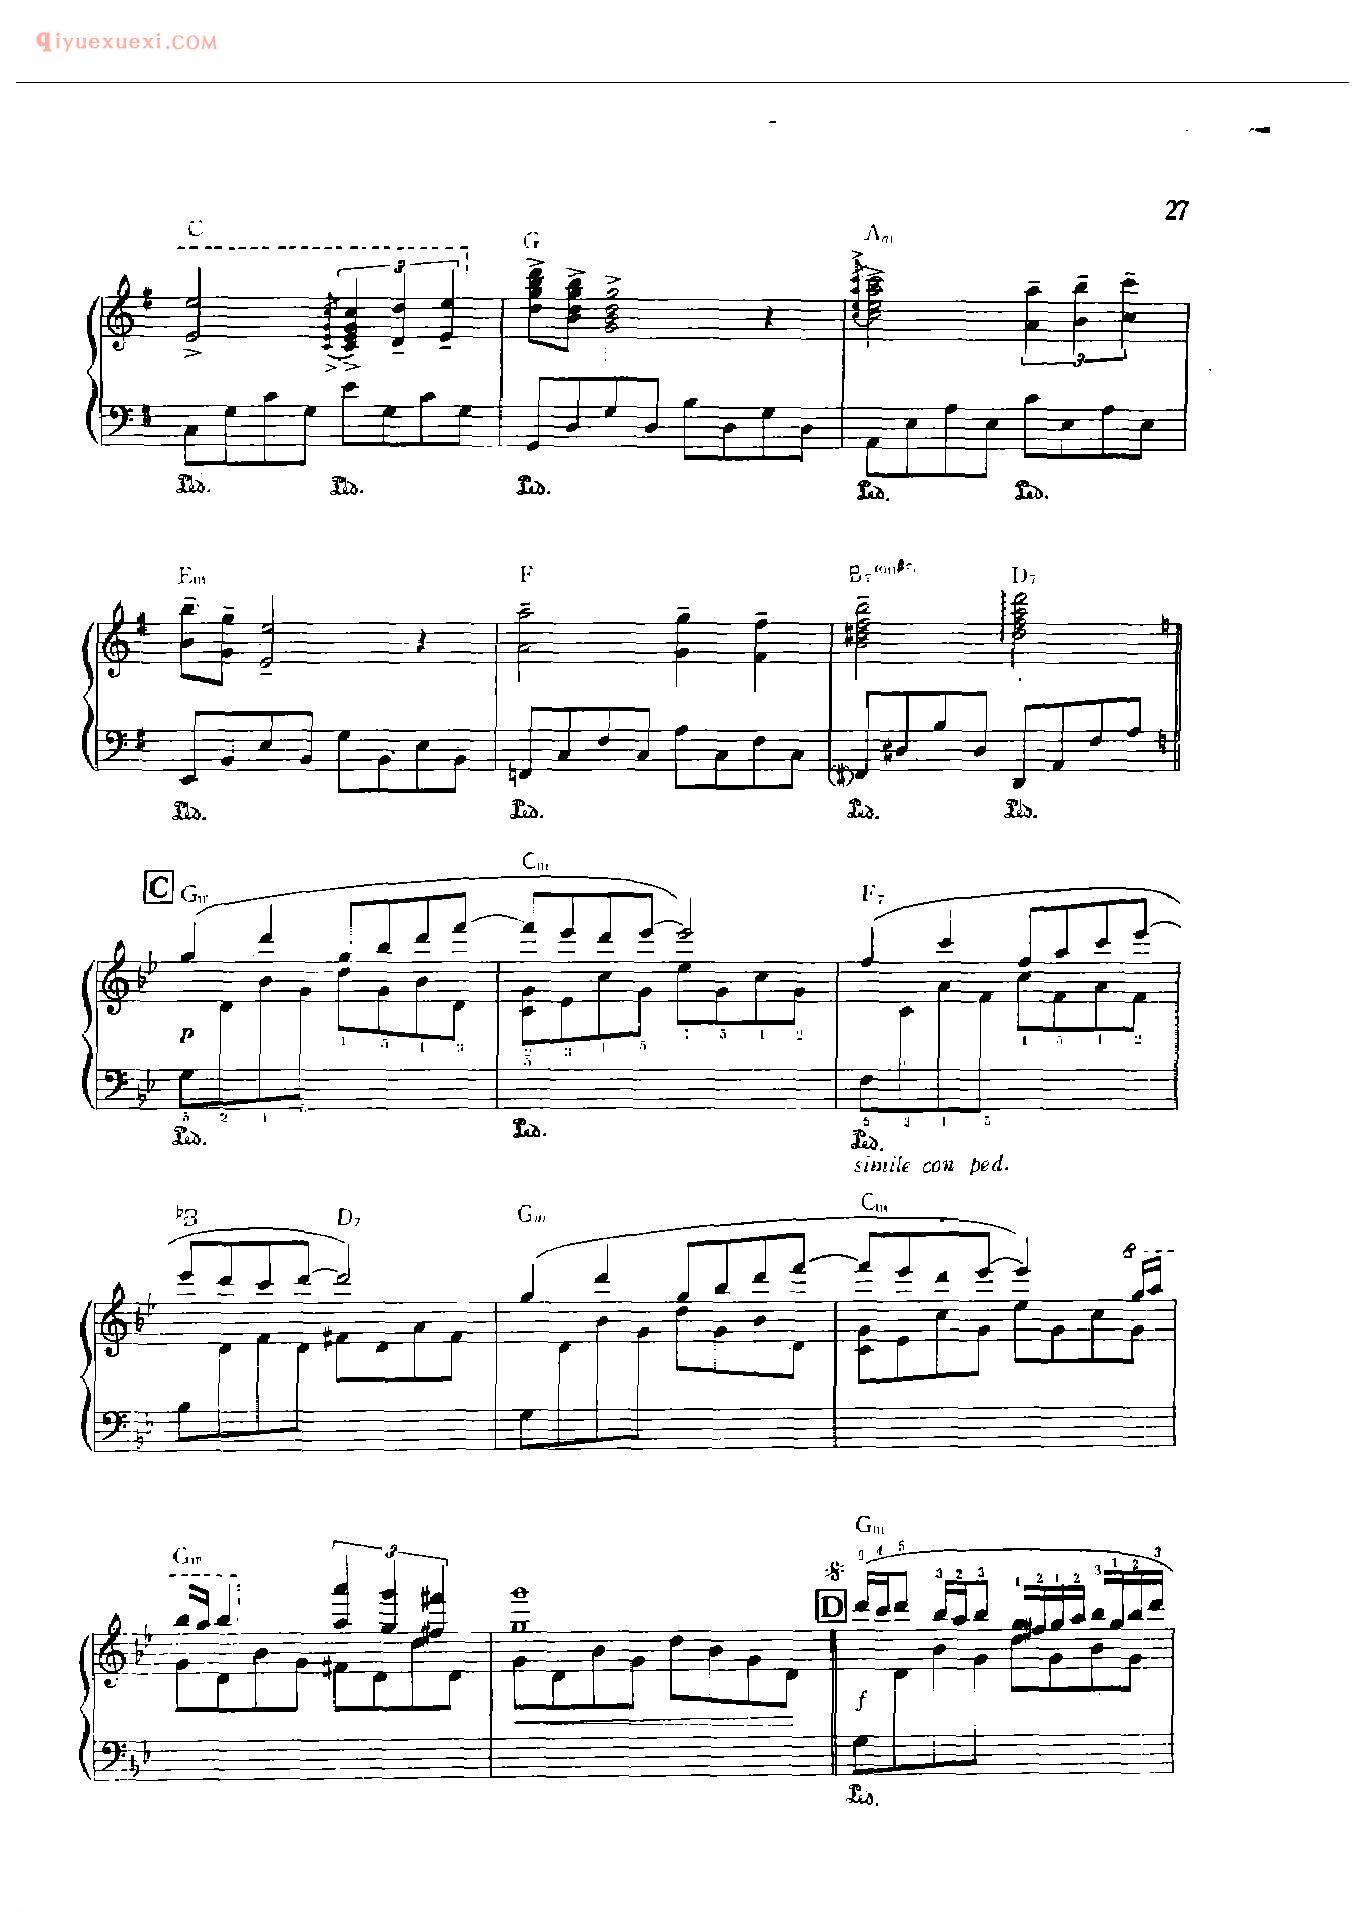 理查德克莱德曼钢琴曲_星空的旋律_保罗·德·森纳维尔、奥利弟弗埃–图圣曲